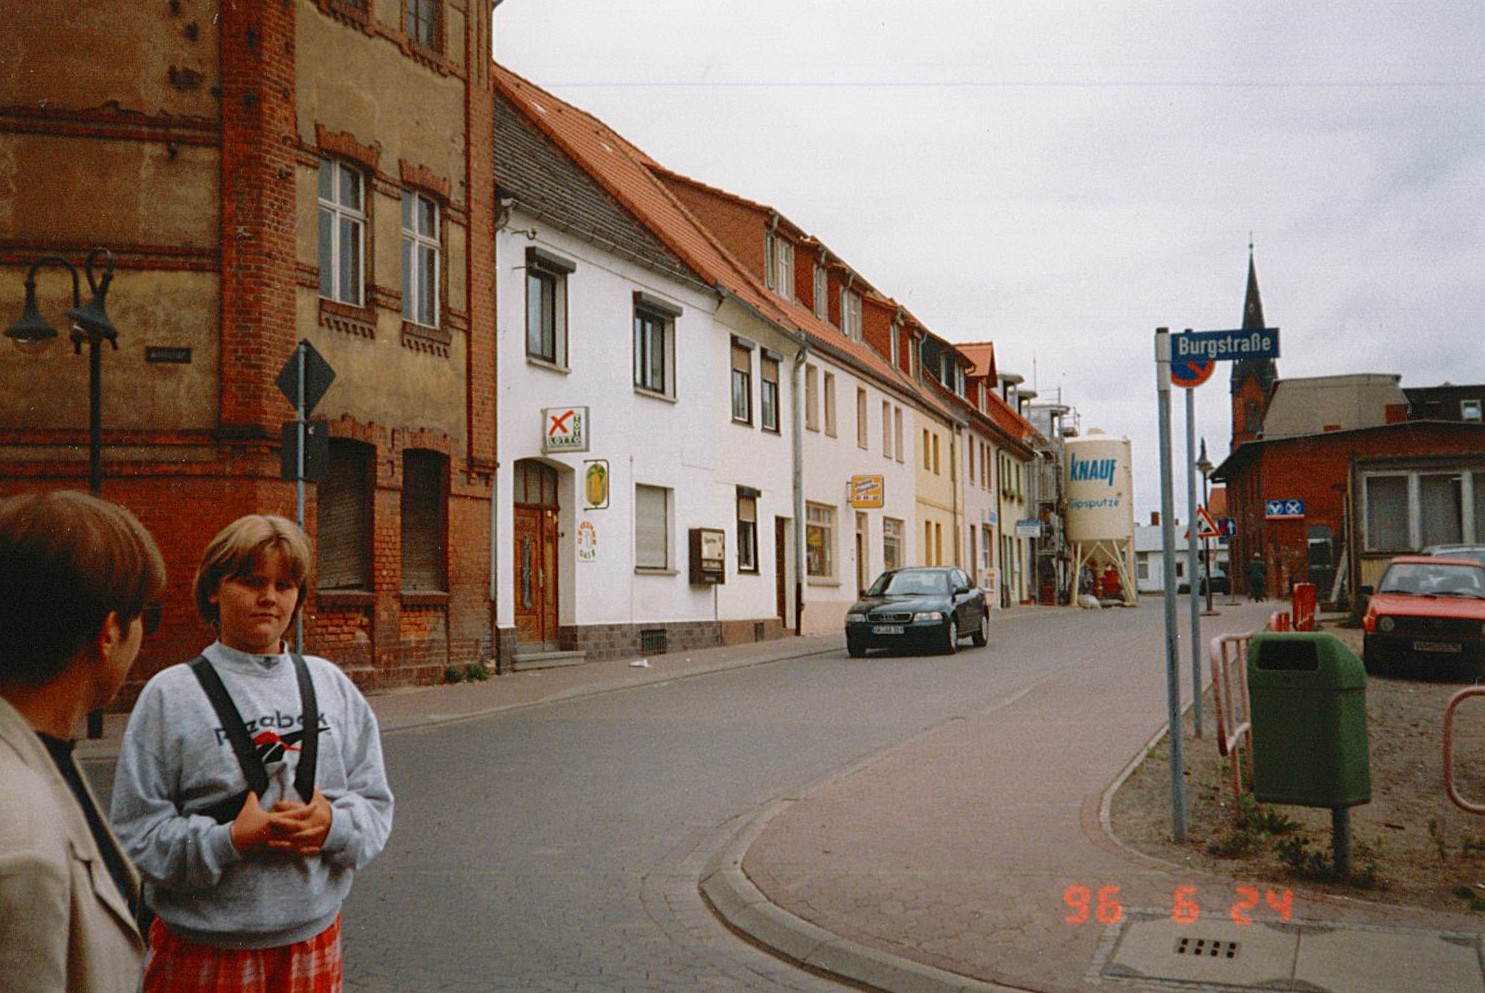 Stadtansicht Wolmirstedt - Damaschkestraße / Burgstraße, 24.06.1996 (Museum Wolmirstedt RR-F)